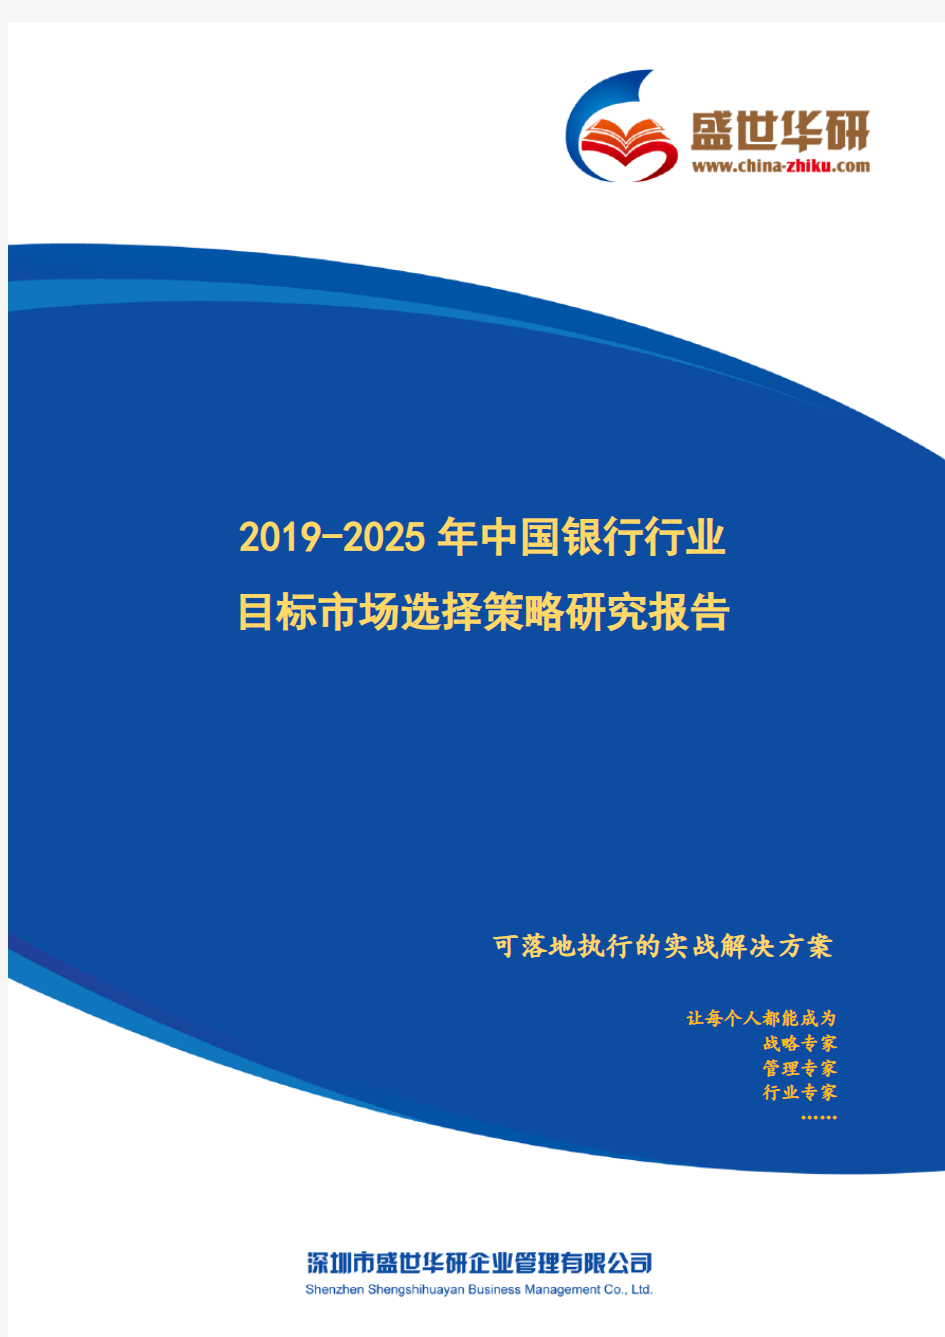 【完整版】2019-2025年中国银行行业目标市场选择策略研究报告